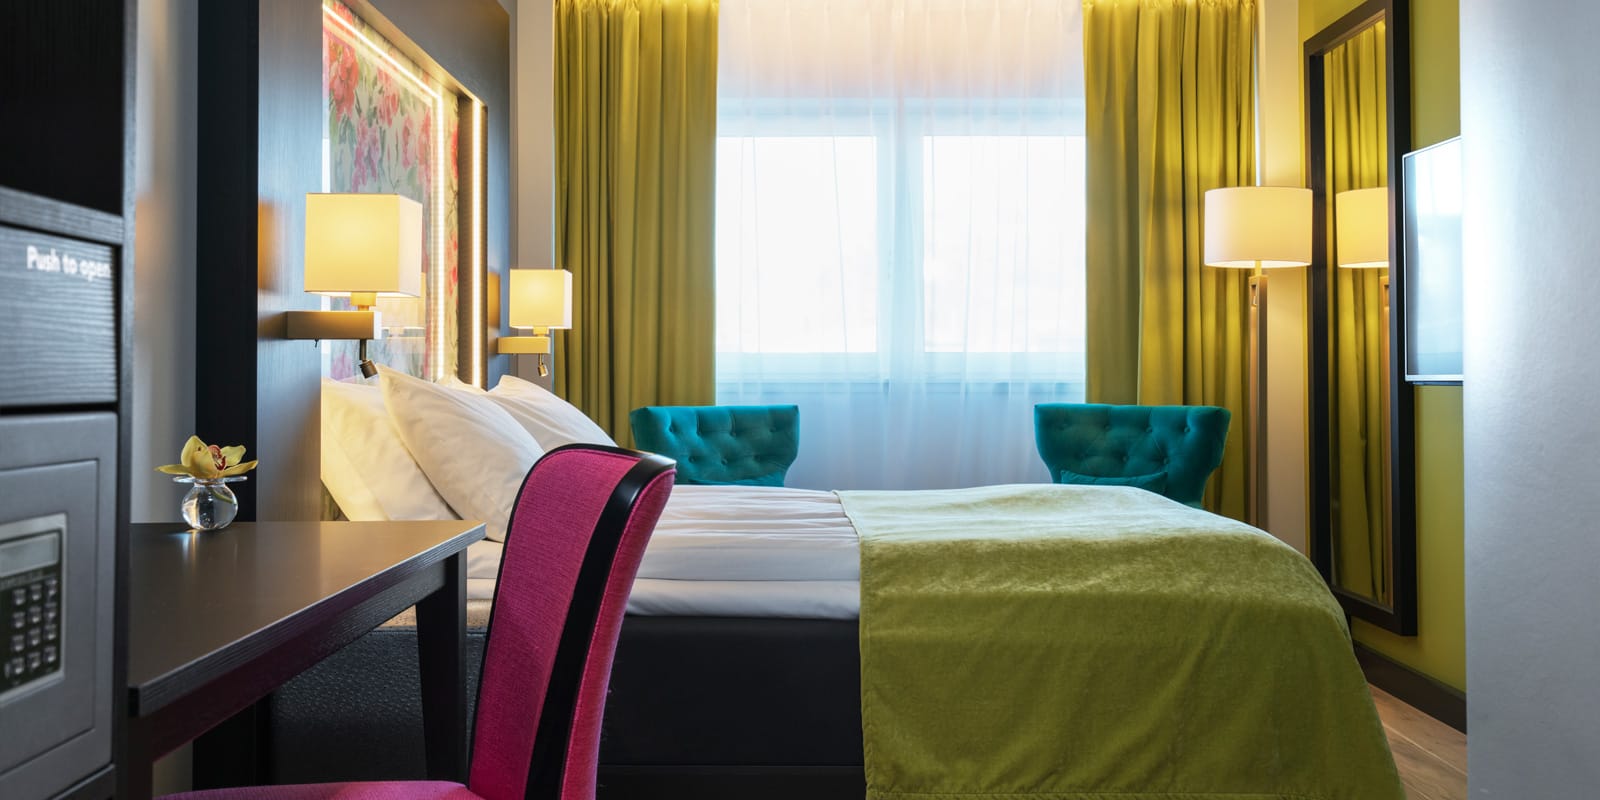 Standard rom med dobbeltseng og skrivepult i lyst hotellrom